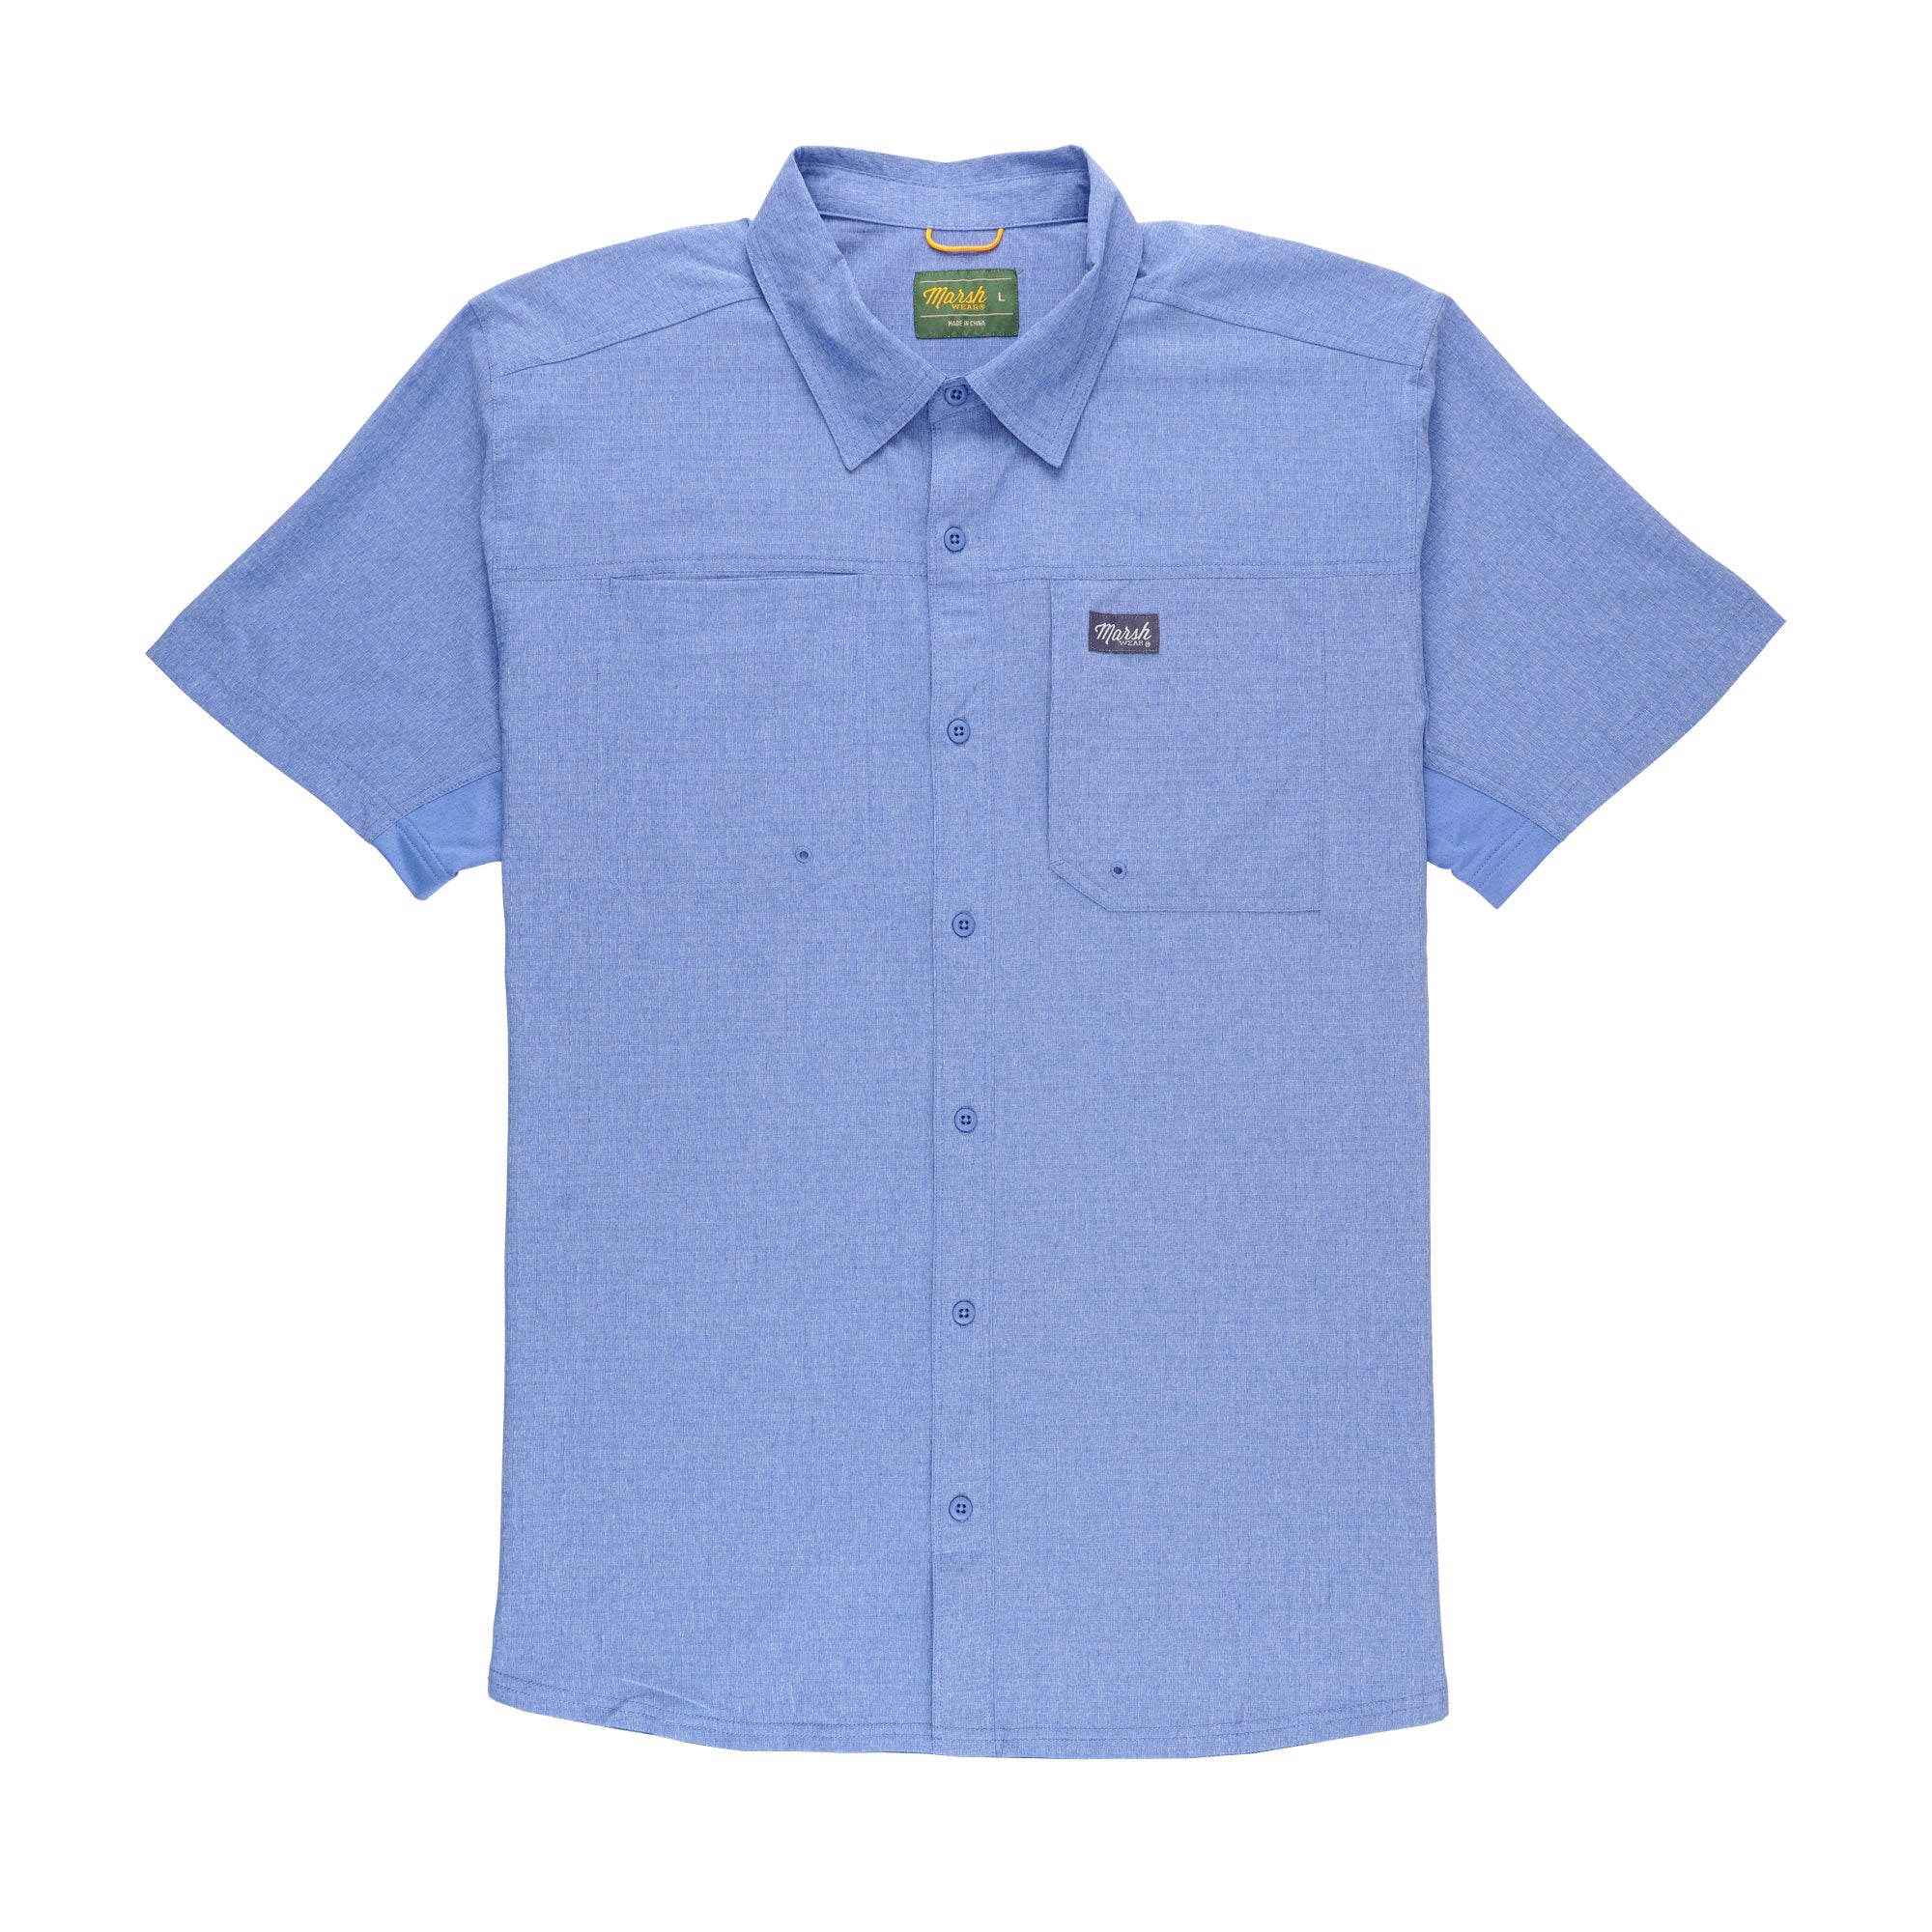 Marsh Wear Lenwood Short Sleeve Button up Shirt